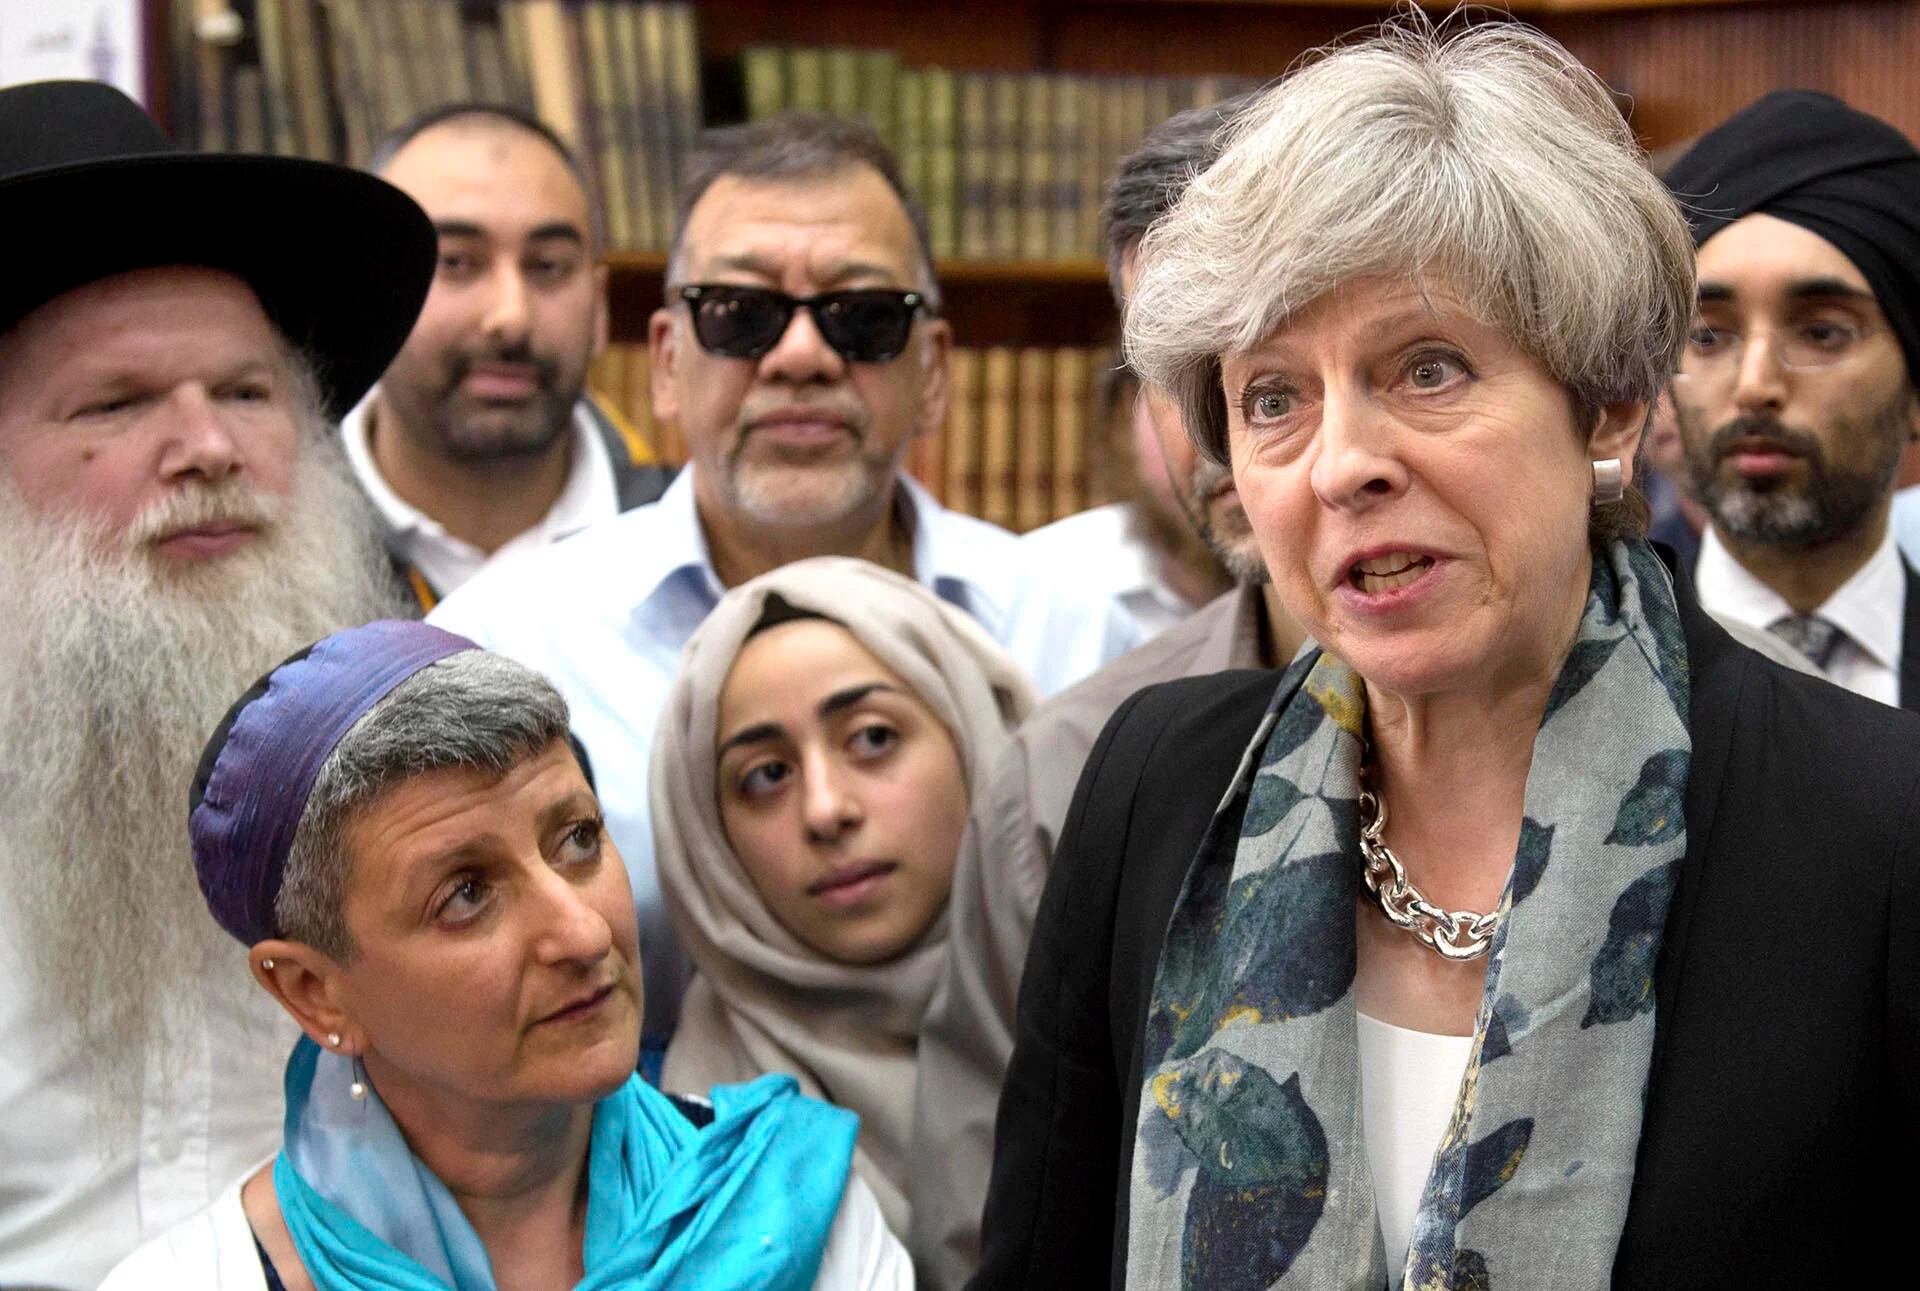 La primer ministro del Reino Unido, Theresa May, en Finsbury Park, luego del ataque a un grupo de fieles frente a una mezquita en Londres